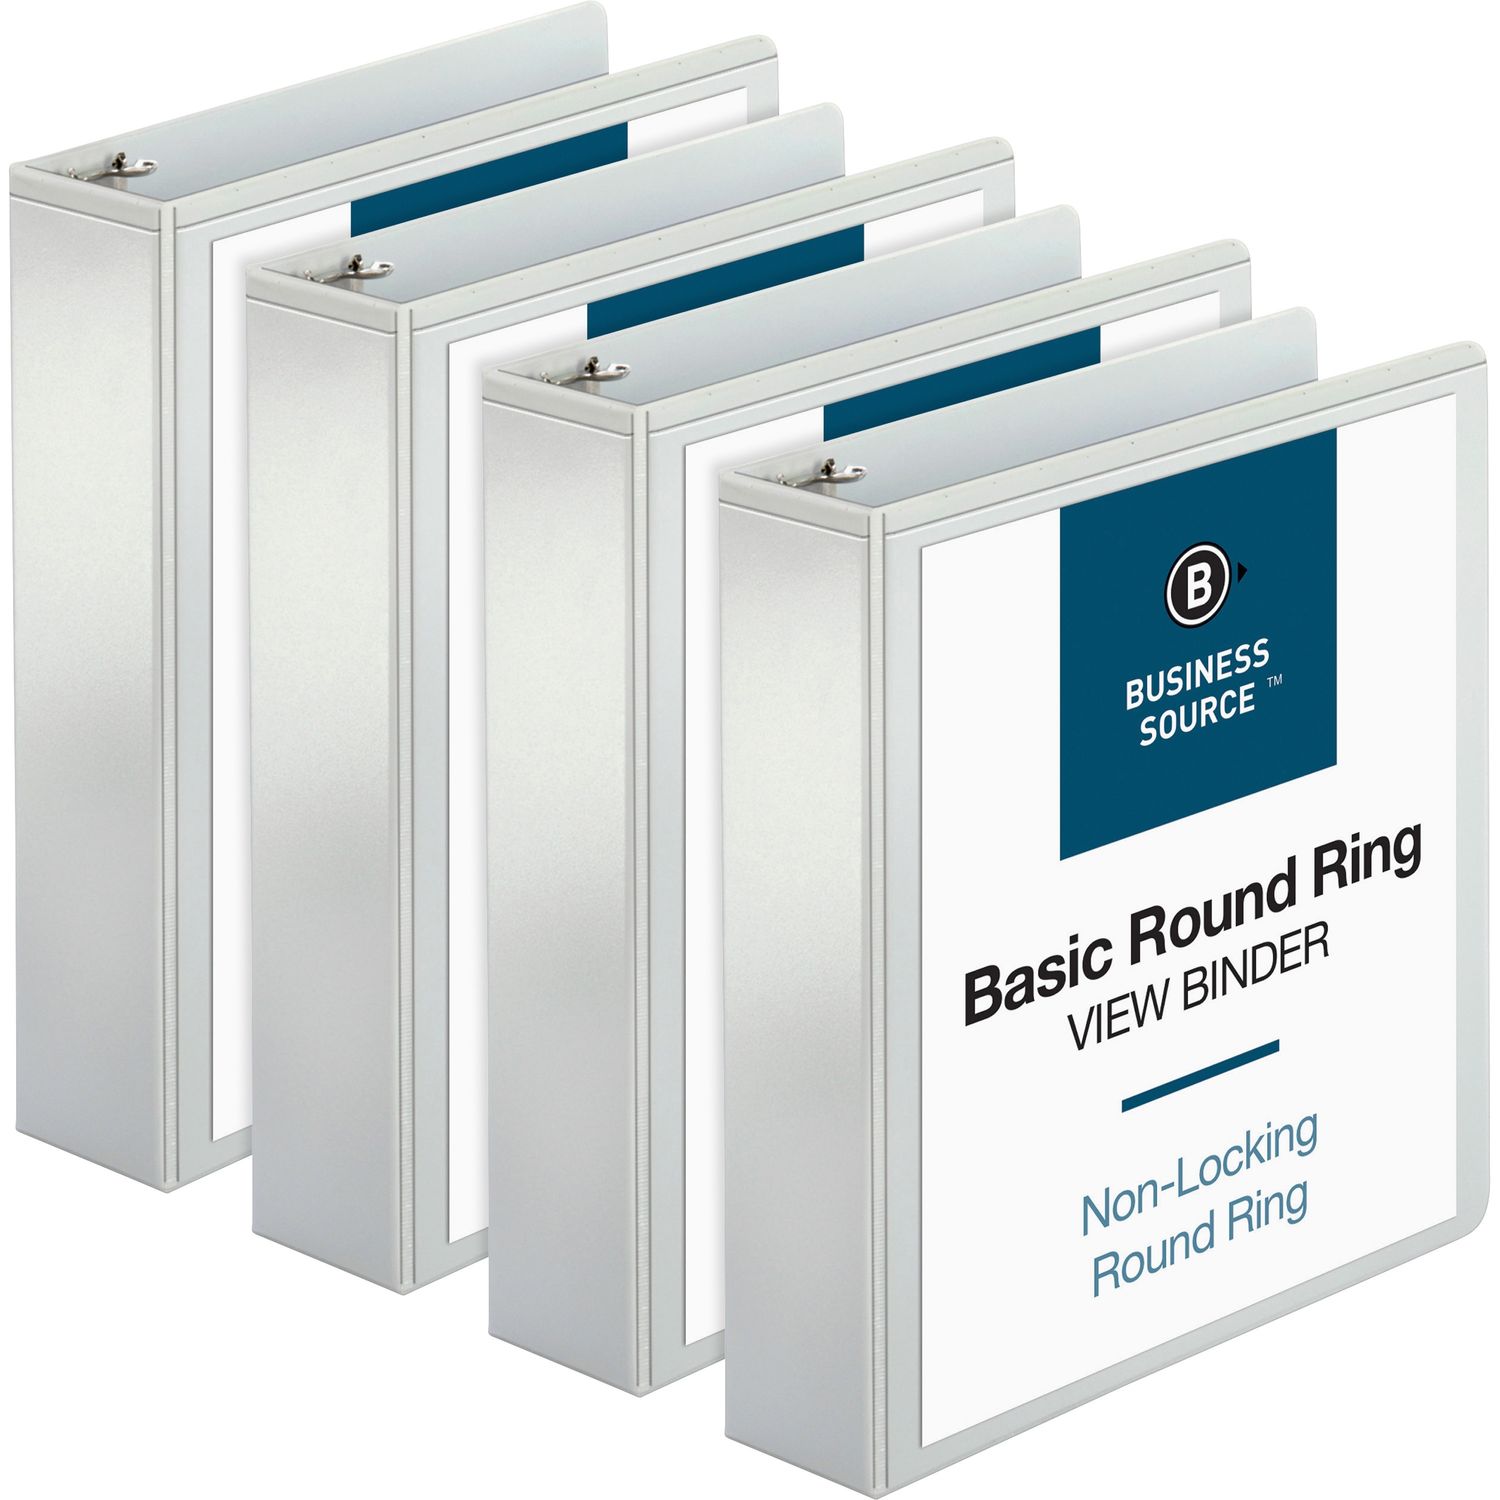 Round-ring View Binder 2" Binder Capacity, Letter, 8 1/2" x 11" Sheet Size, 475 Sheet Capacity, Round Ring Fastener(s), 2 Internal Pocket(s), Polypropylene, White